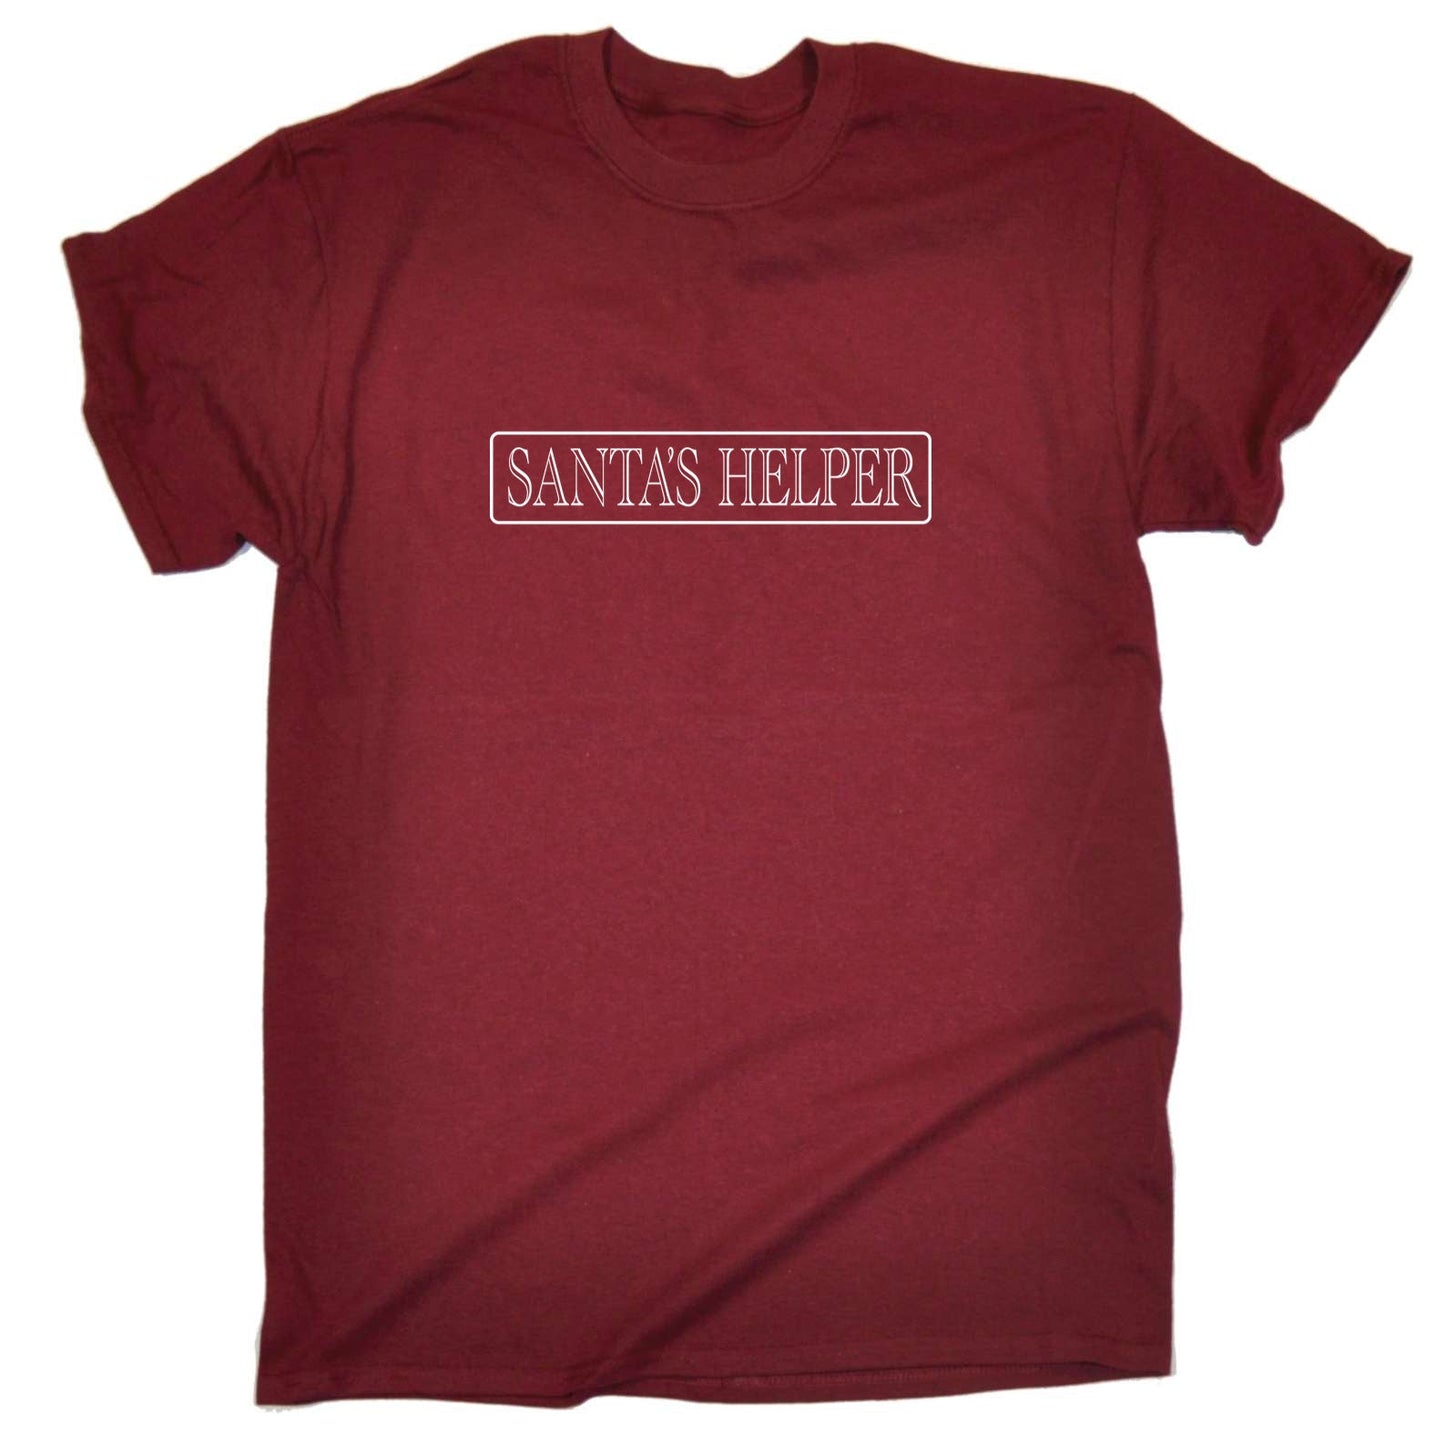 Santas Helper Christmas Xmas - Mens Funny T-Shirt Tshirts